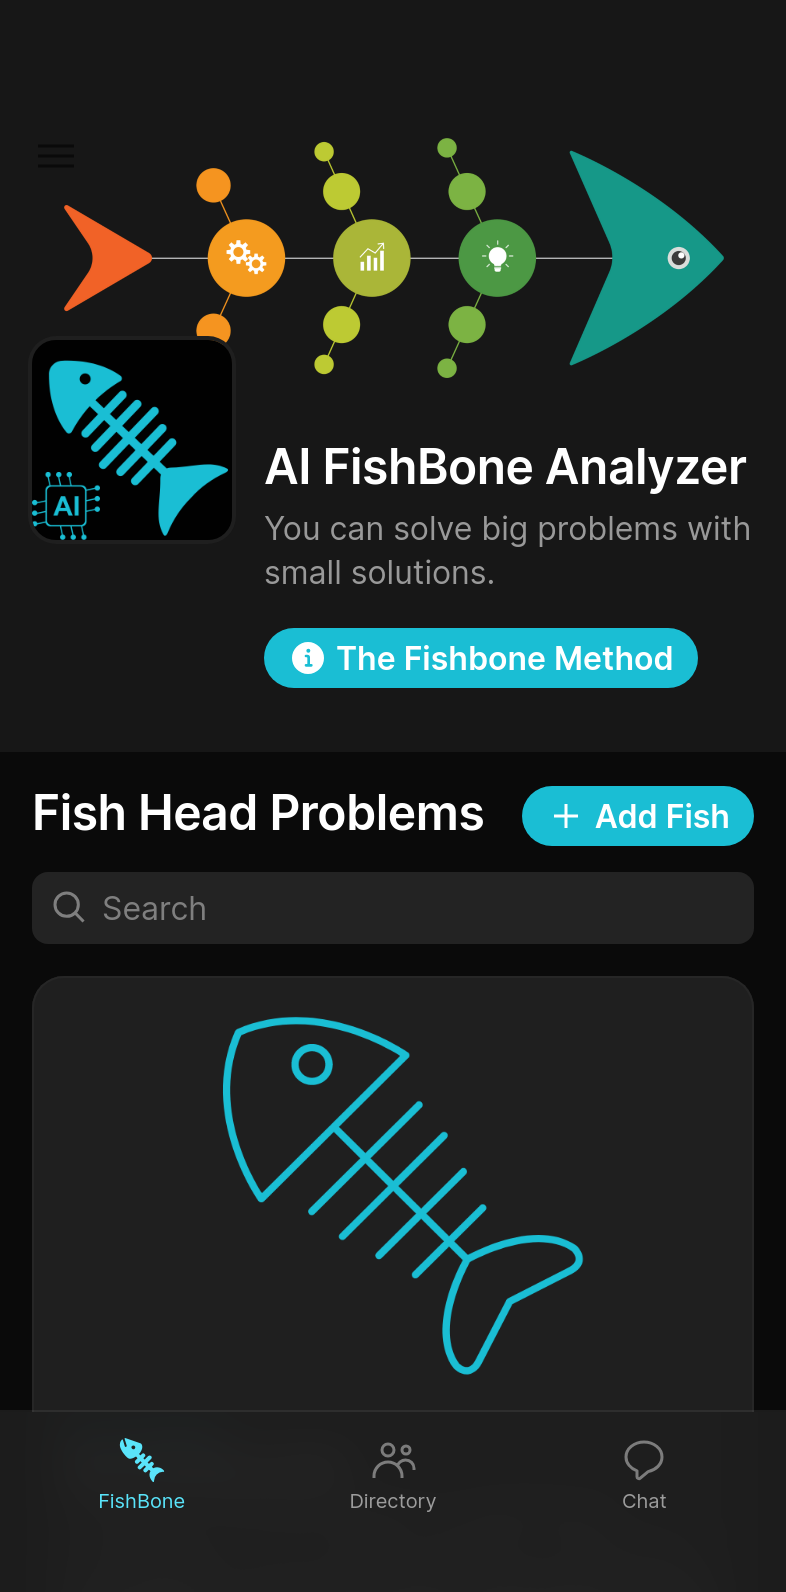 AI FishBone Analyzer